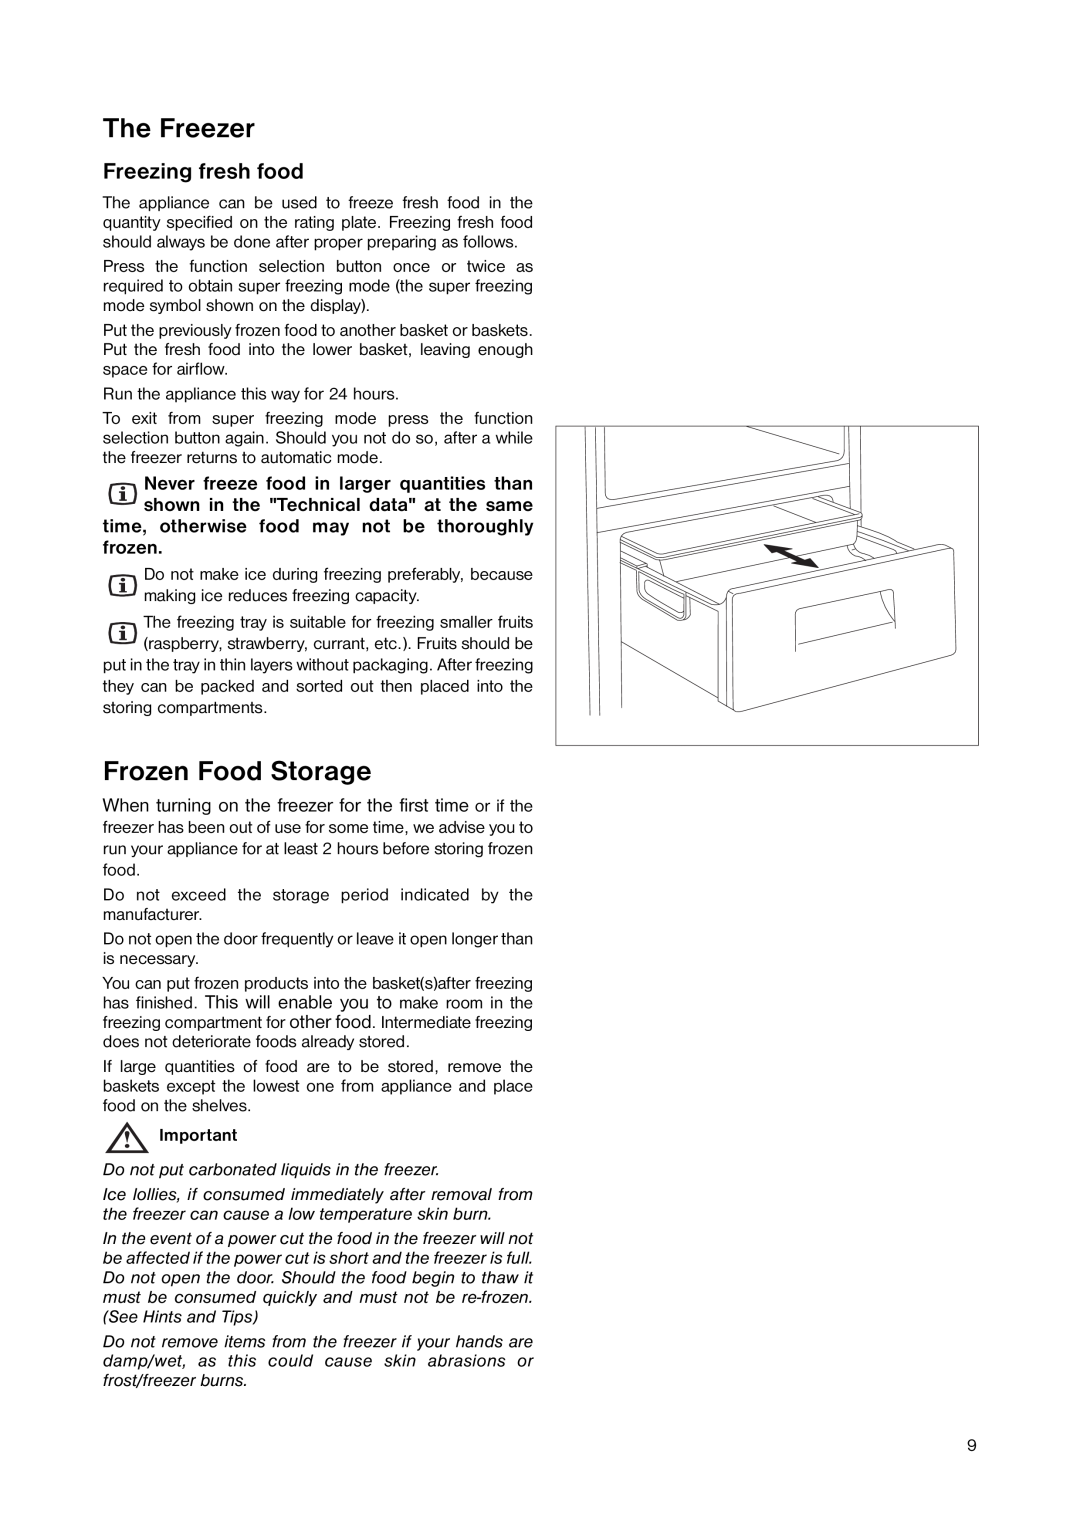 Zanussi ZNB 344 S, ZNB 344 W manual The Freezer, Frozen Food Storage, Freezing fresh food 